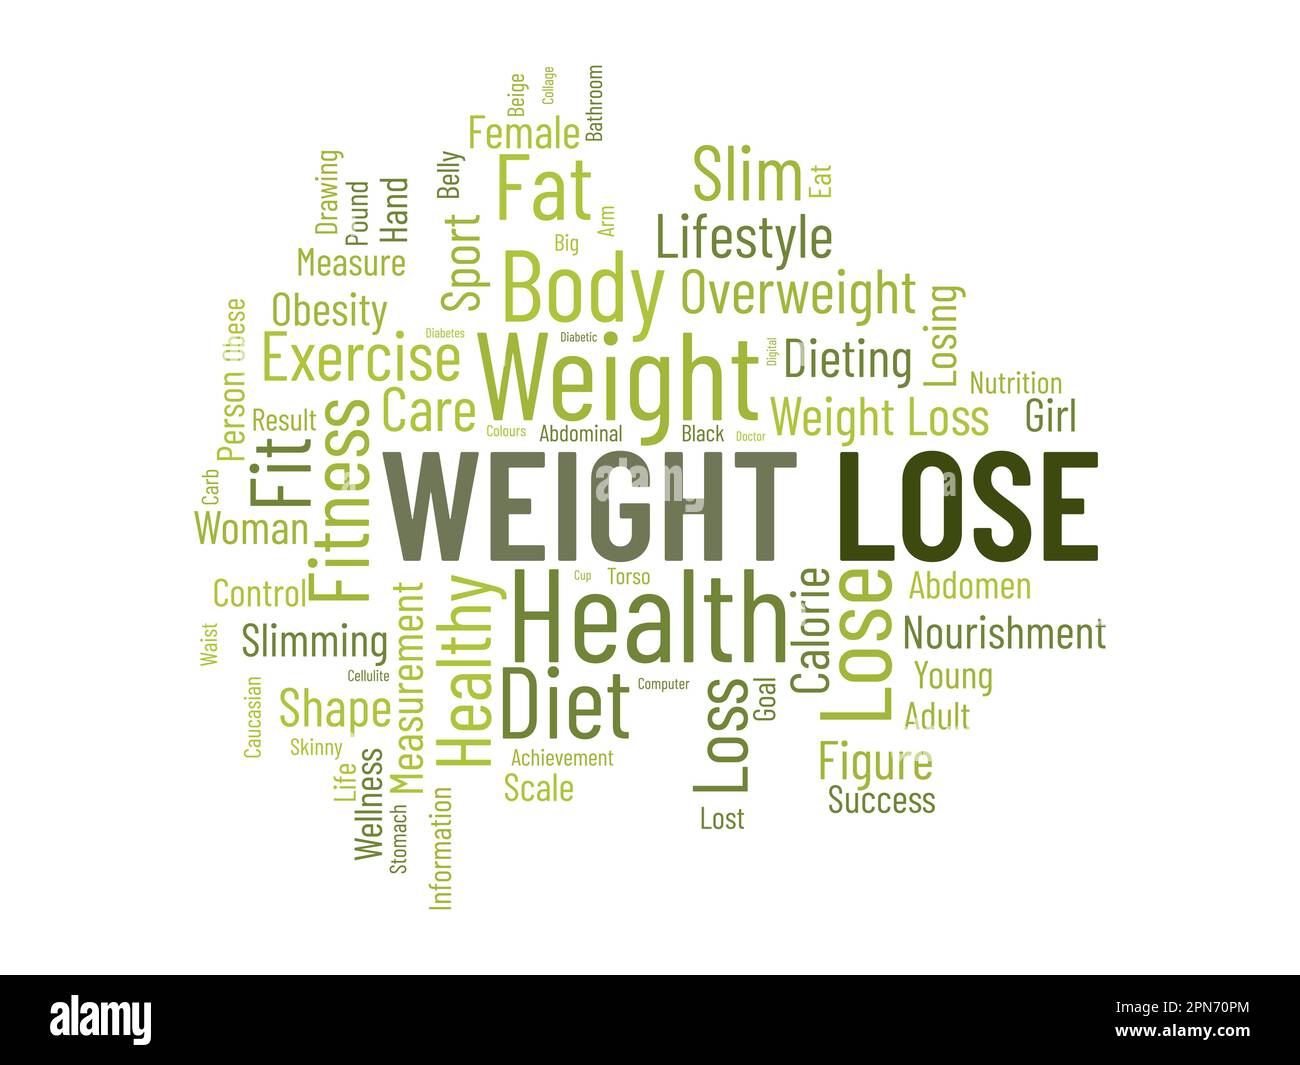 Wortwolken-Hintergrundkonzept für Gewichtsverlust. Diät mit gesunden Lebensmitteln für Übergewicht zu verlieren oder ein gesundes Leben. vektordarstellung. Stock Vektor